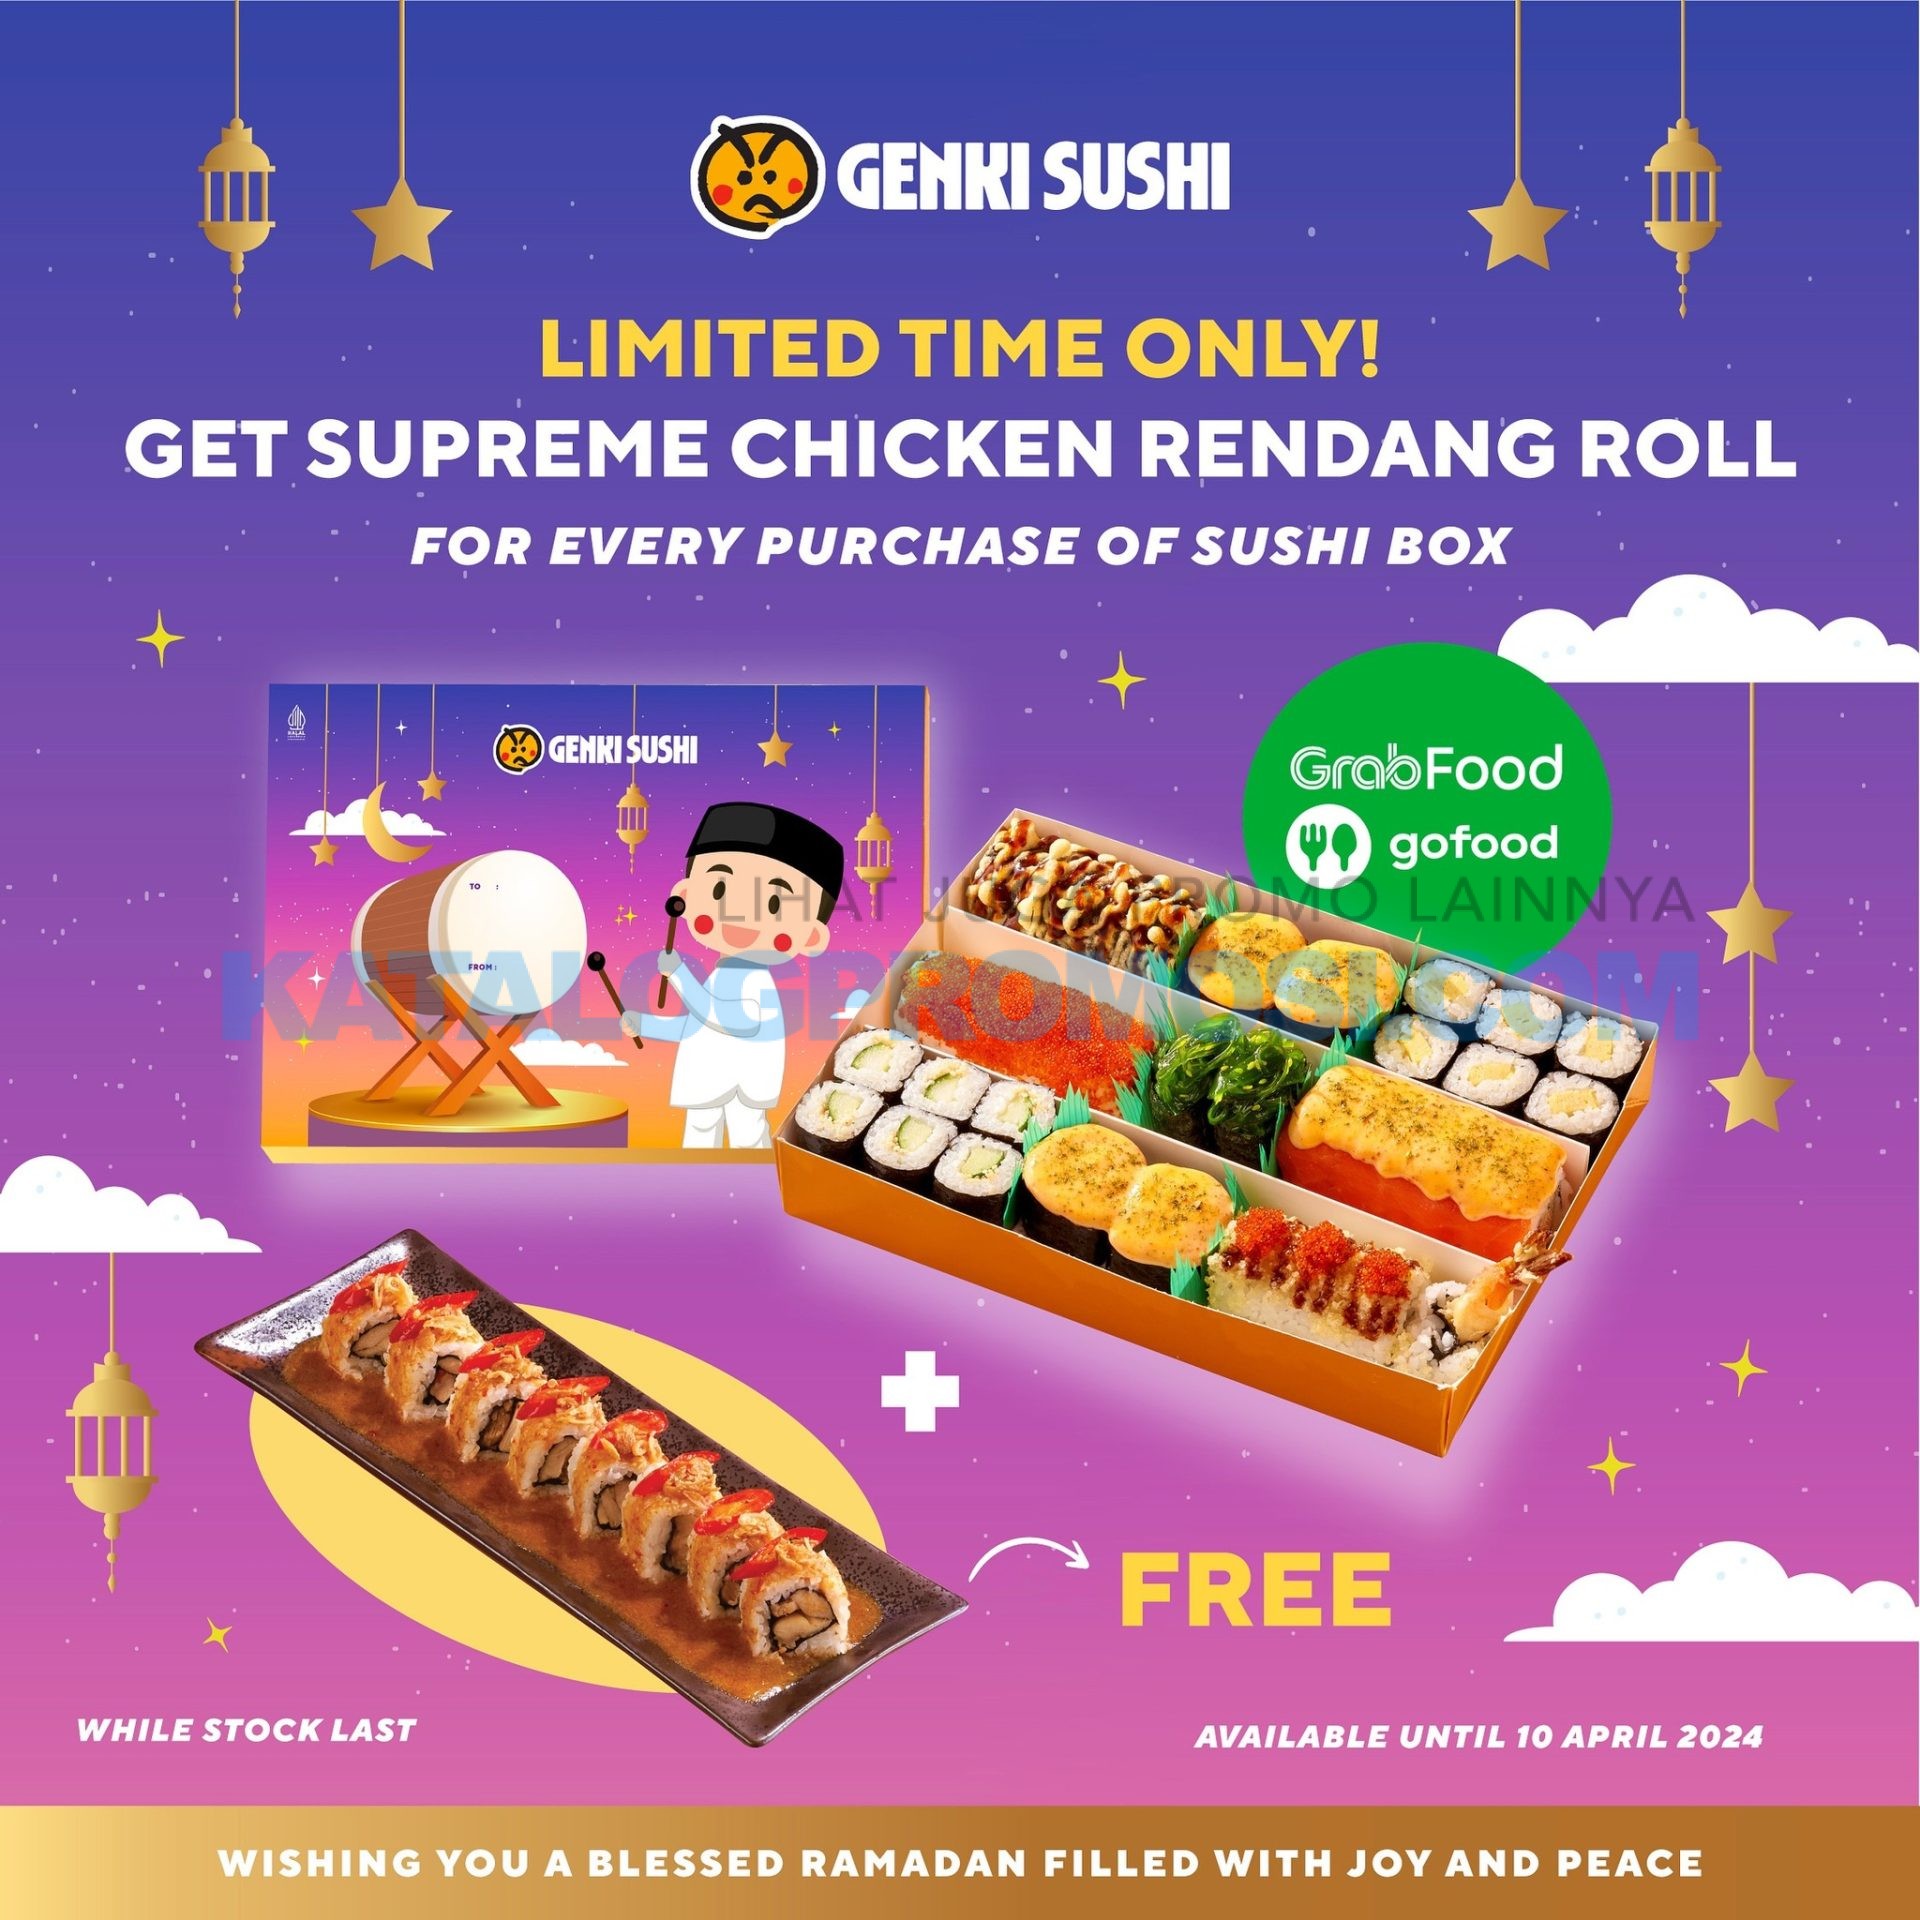 Promo GENKI SUSHI FREE Supreme Chicken Rendang Roll